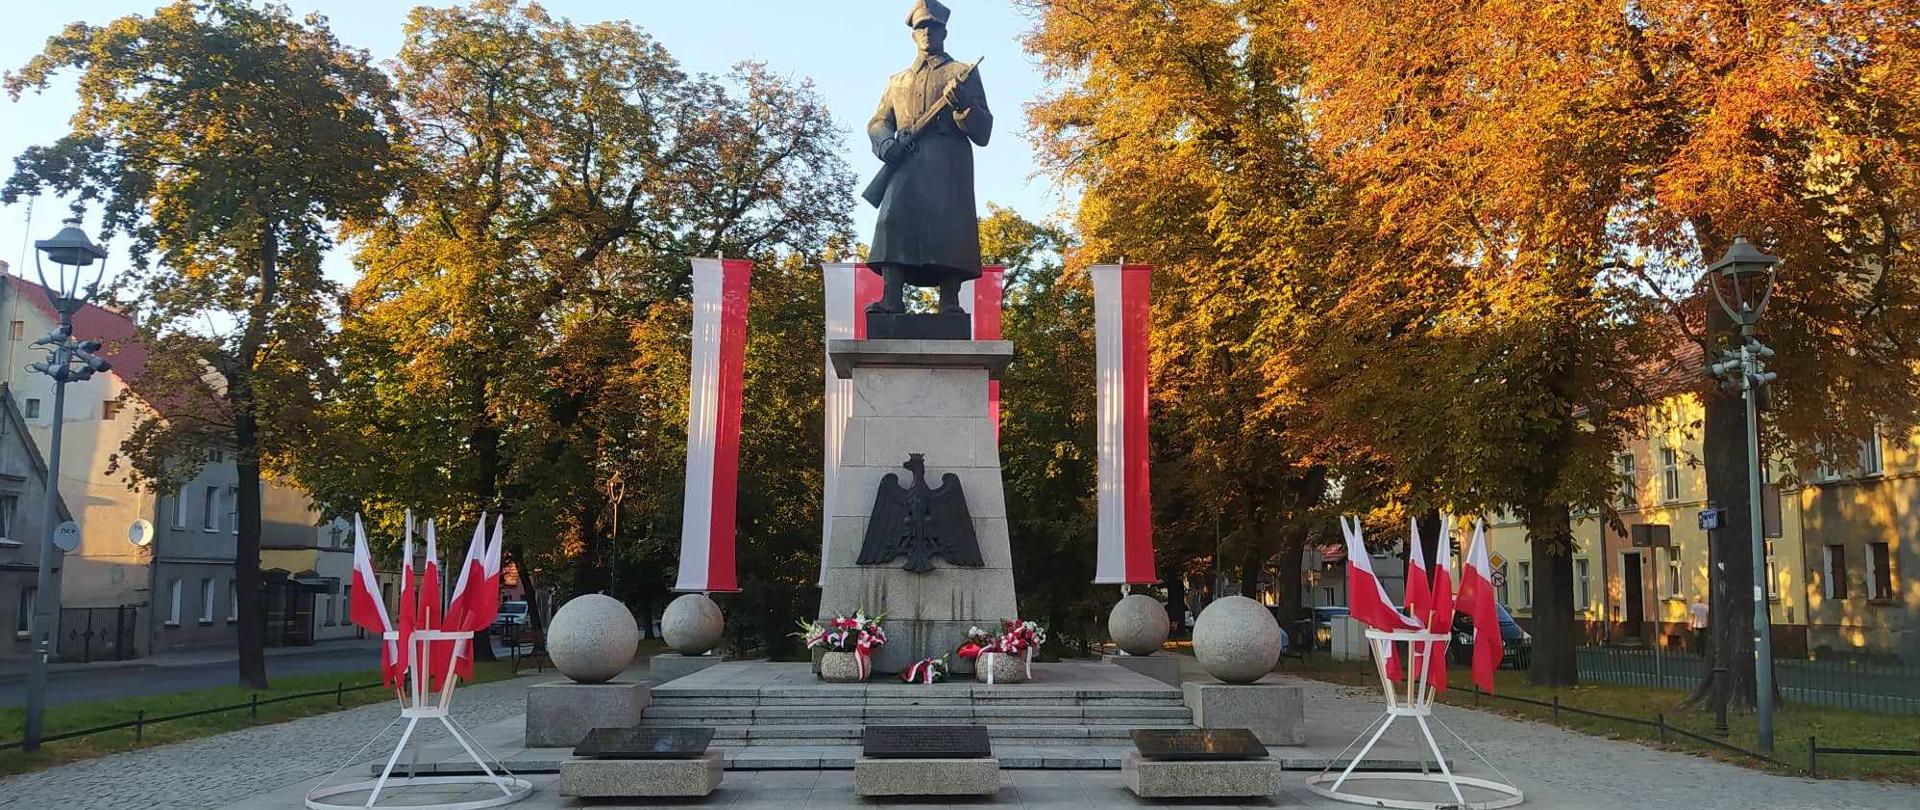 84. rocznica agresji ZSRR na Polskę.Zdjęcie przedstawia Pomnik Żołnierza Polskiego w Rawiczu. Żołnierz w czapce rogatywce i płaszczu, trzymający długą broń ustawiony jest na cokole. Na przedniej ściance cokołu umieszczone jest godło RP. Za pomnikiem na pionowych masztach zawieszone są flagi biało-czerwone. Przed pomnikiem znajdują się dwa stojaki z flagami narodowymi.W tle drzewa i budynki.